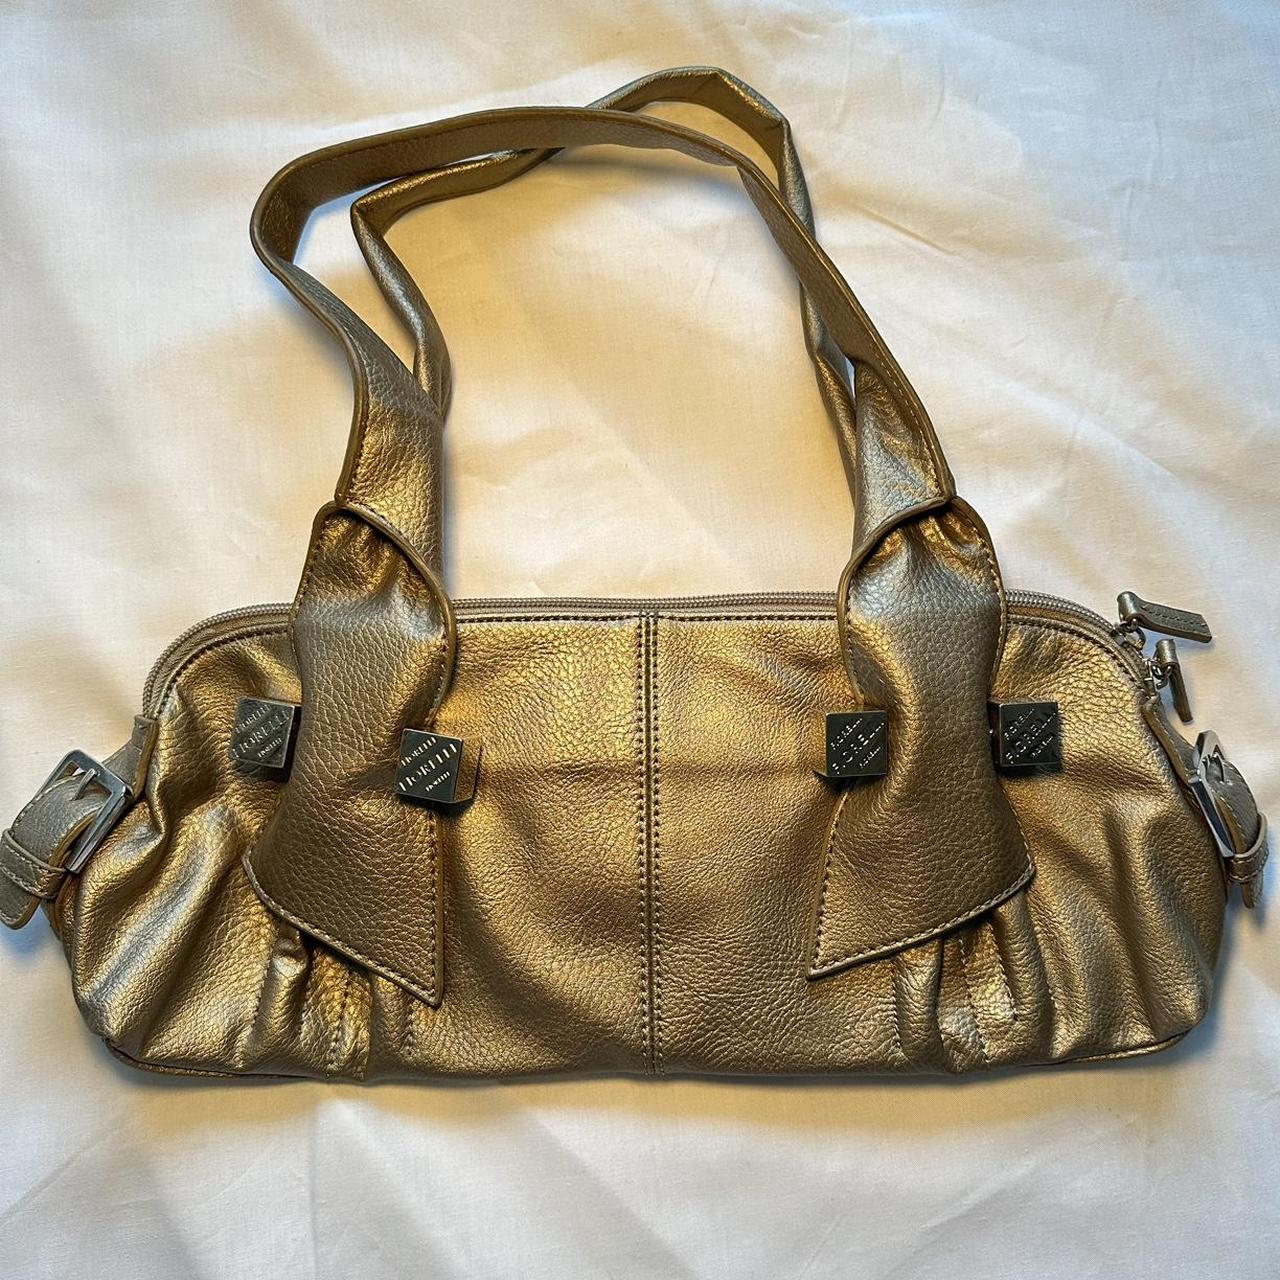 Gold y2k vintage Fiorelli shoulder bag with back... - Depop